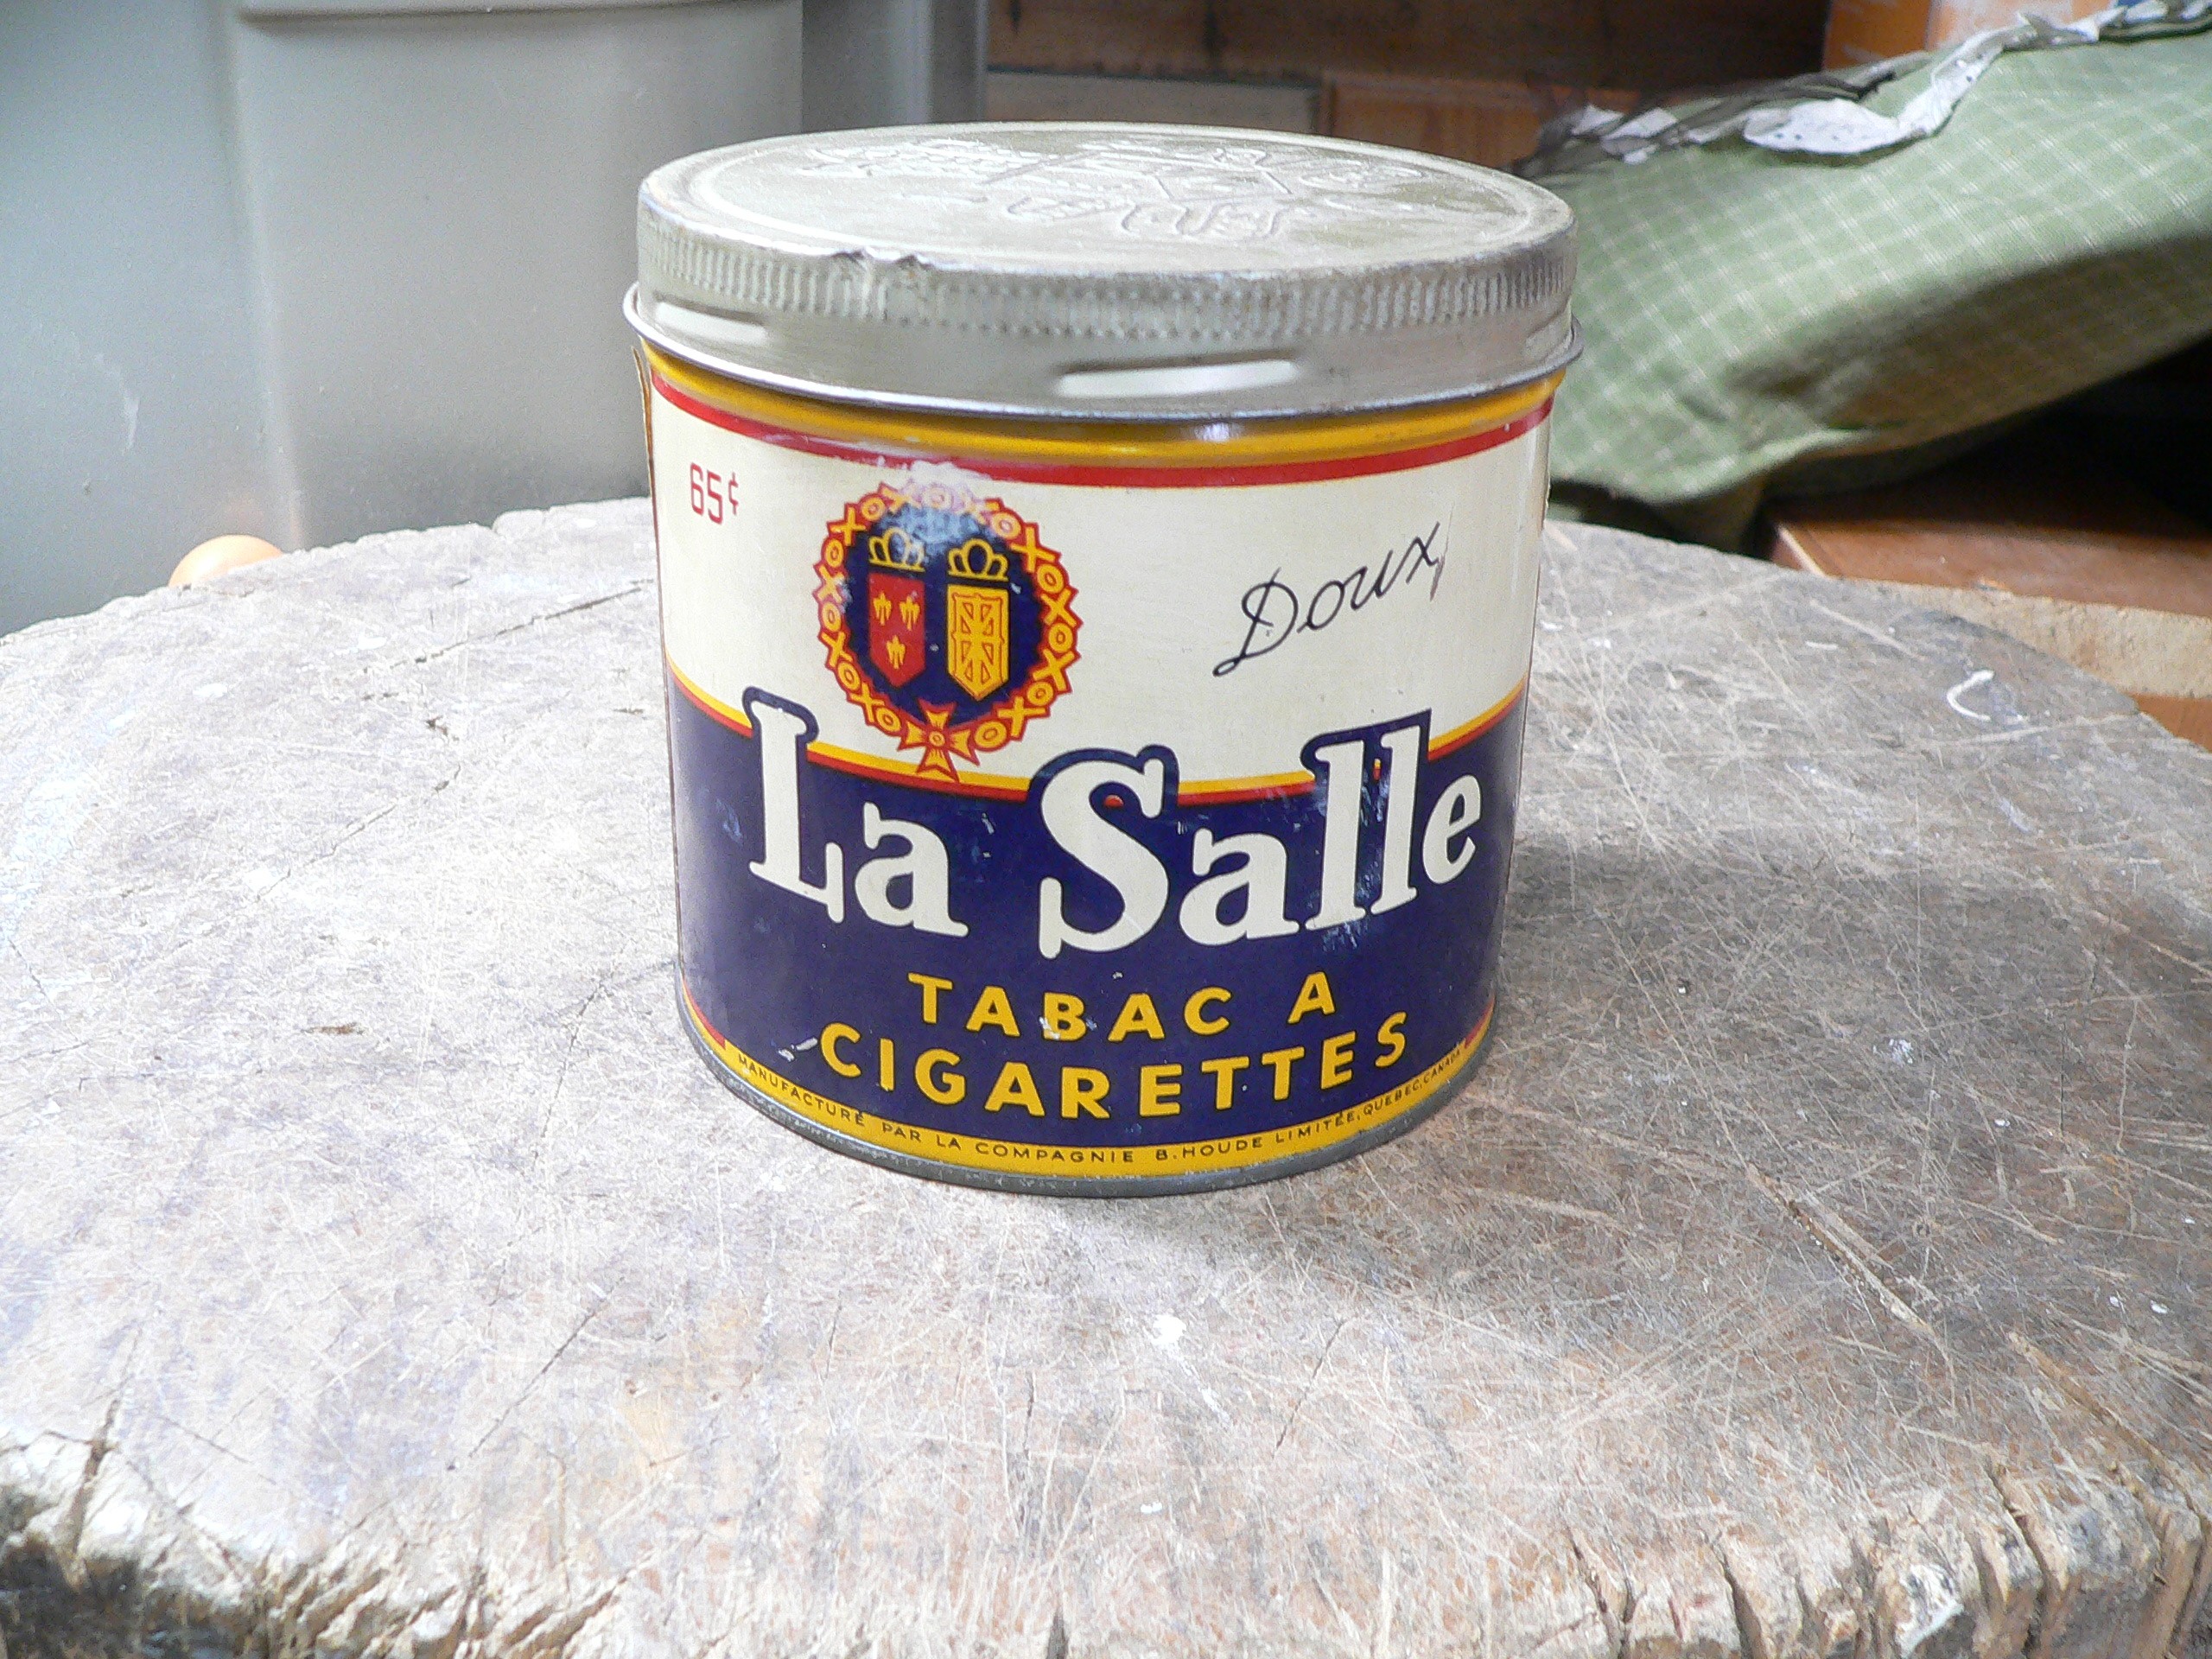 Canne de tabac Lasalle antique # 10814